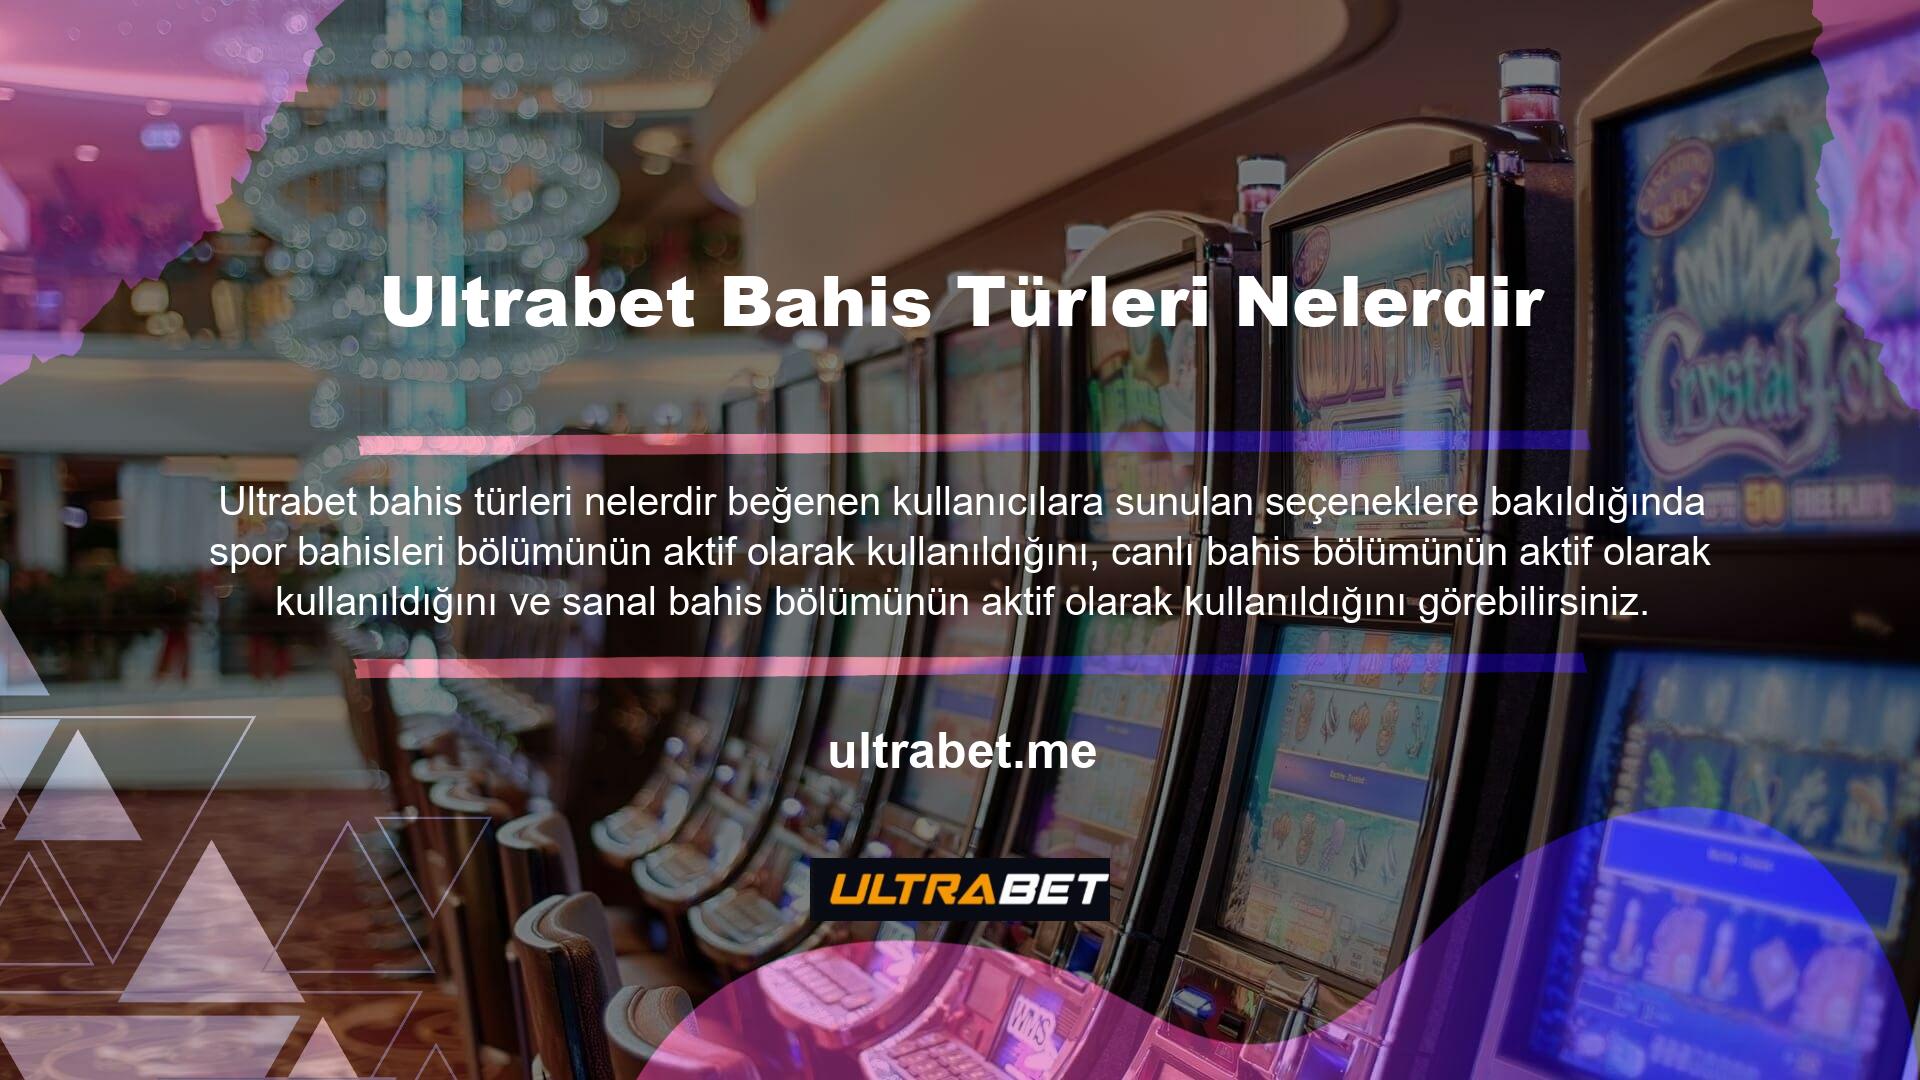 Ultrabet Spor Bahisçisi  Bahis Türleri Nelerdirİlk bölüm yaklaşan oyunlar veya henüz başlamamış oyunlar için mevcuttur